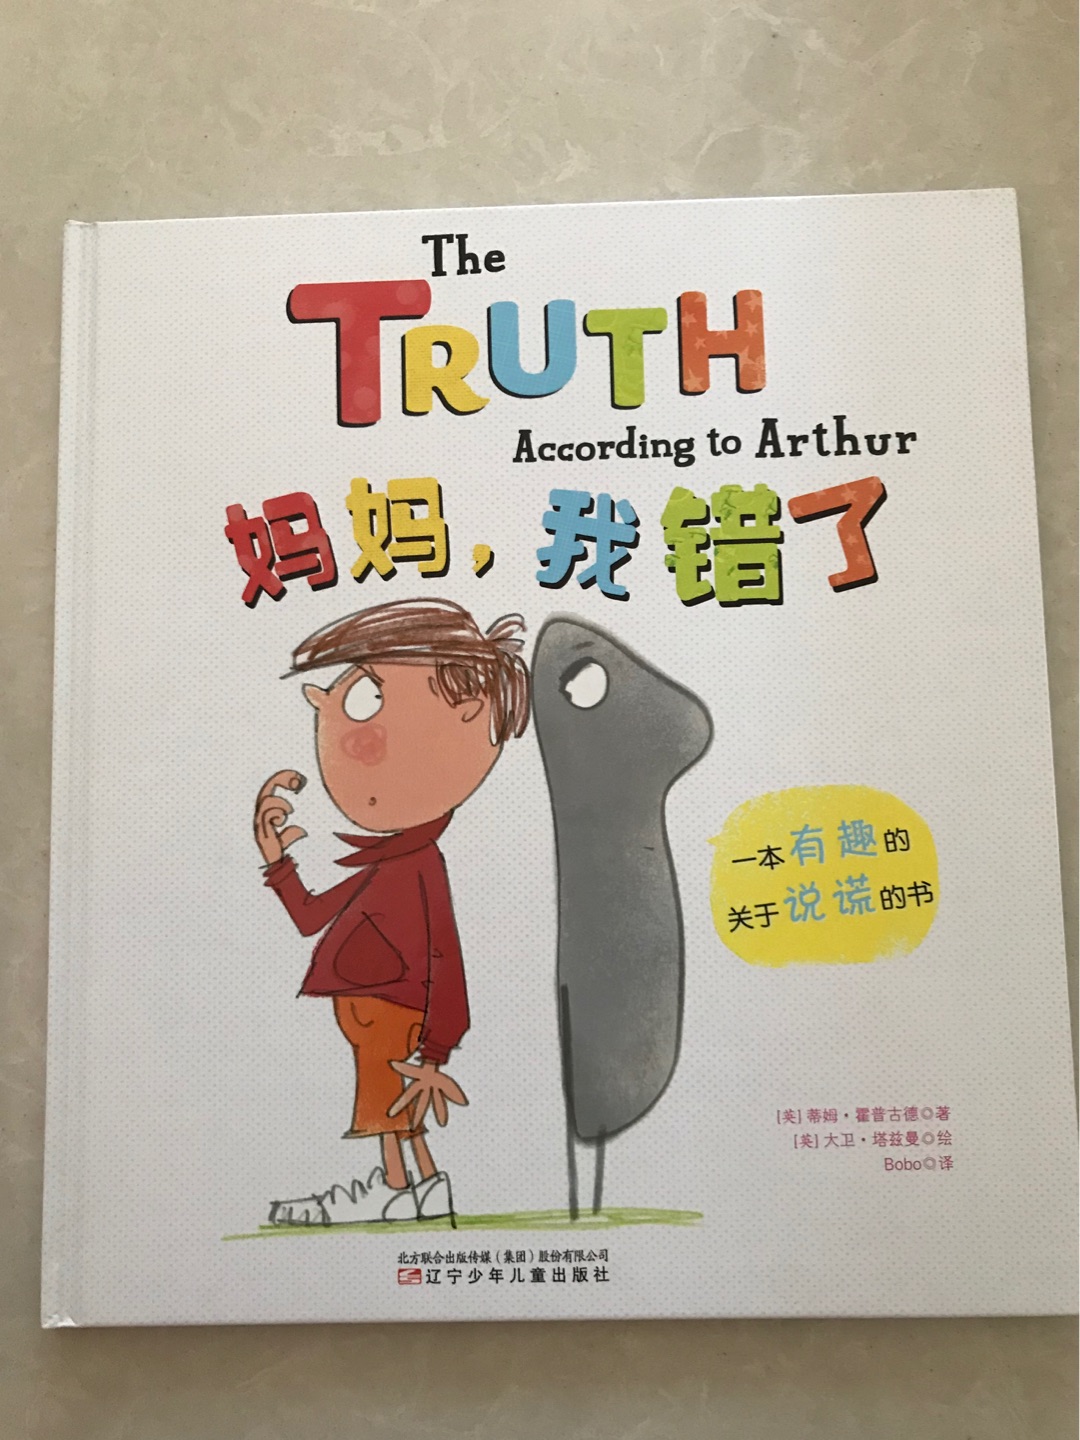 这书挺好看的 前面是中文 后面是英文原版 个人感觉 英文原版也不难